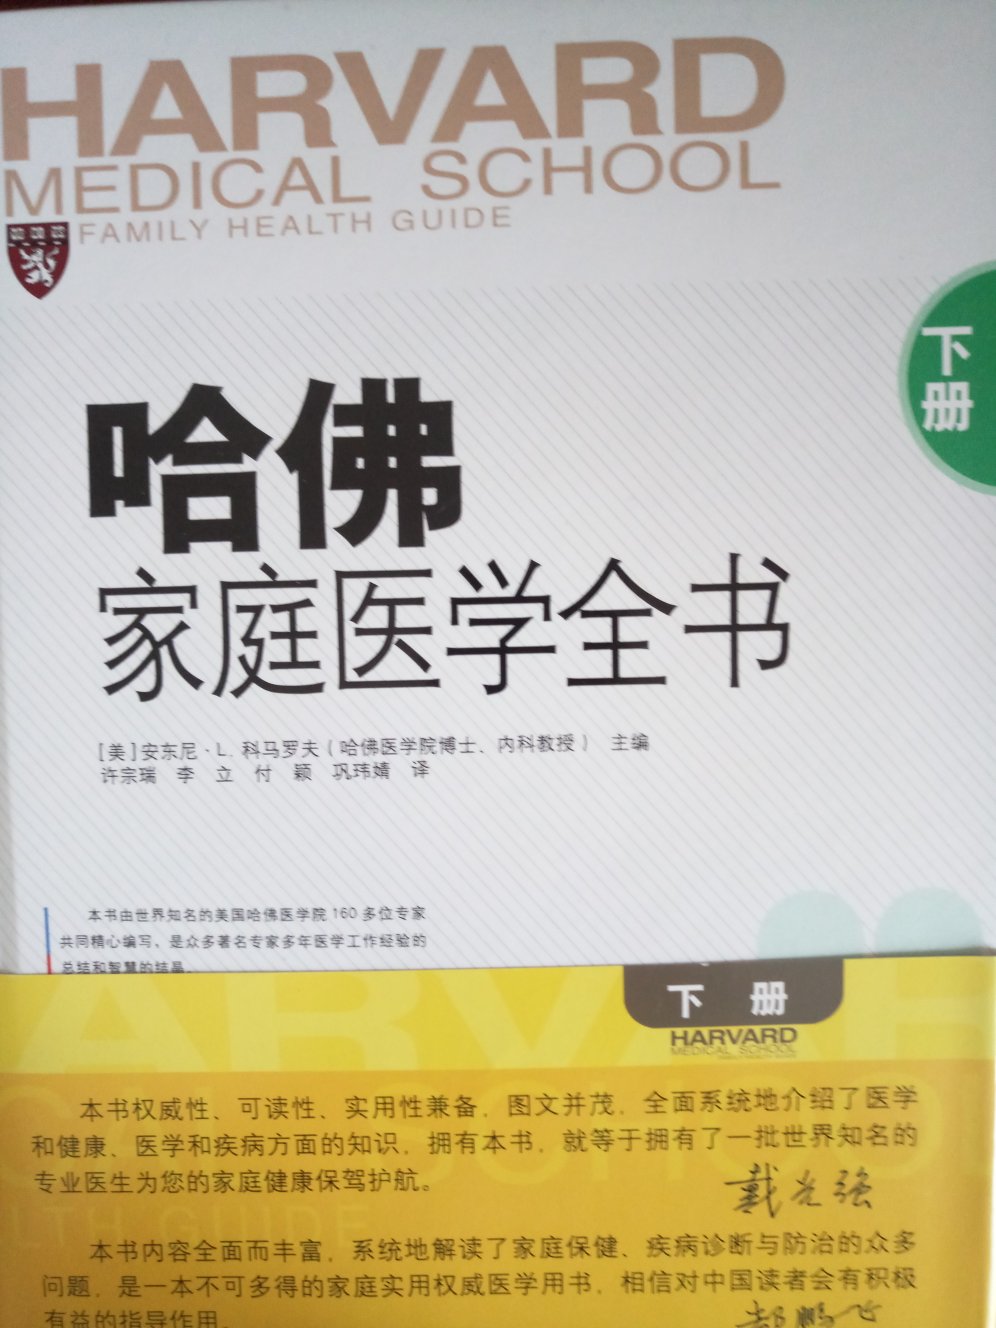 厚厚的两本书，内容全面而丰富，系统的介绍了医学和健康疾病方面的知识